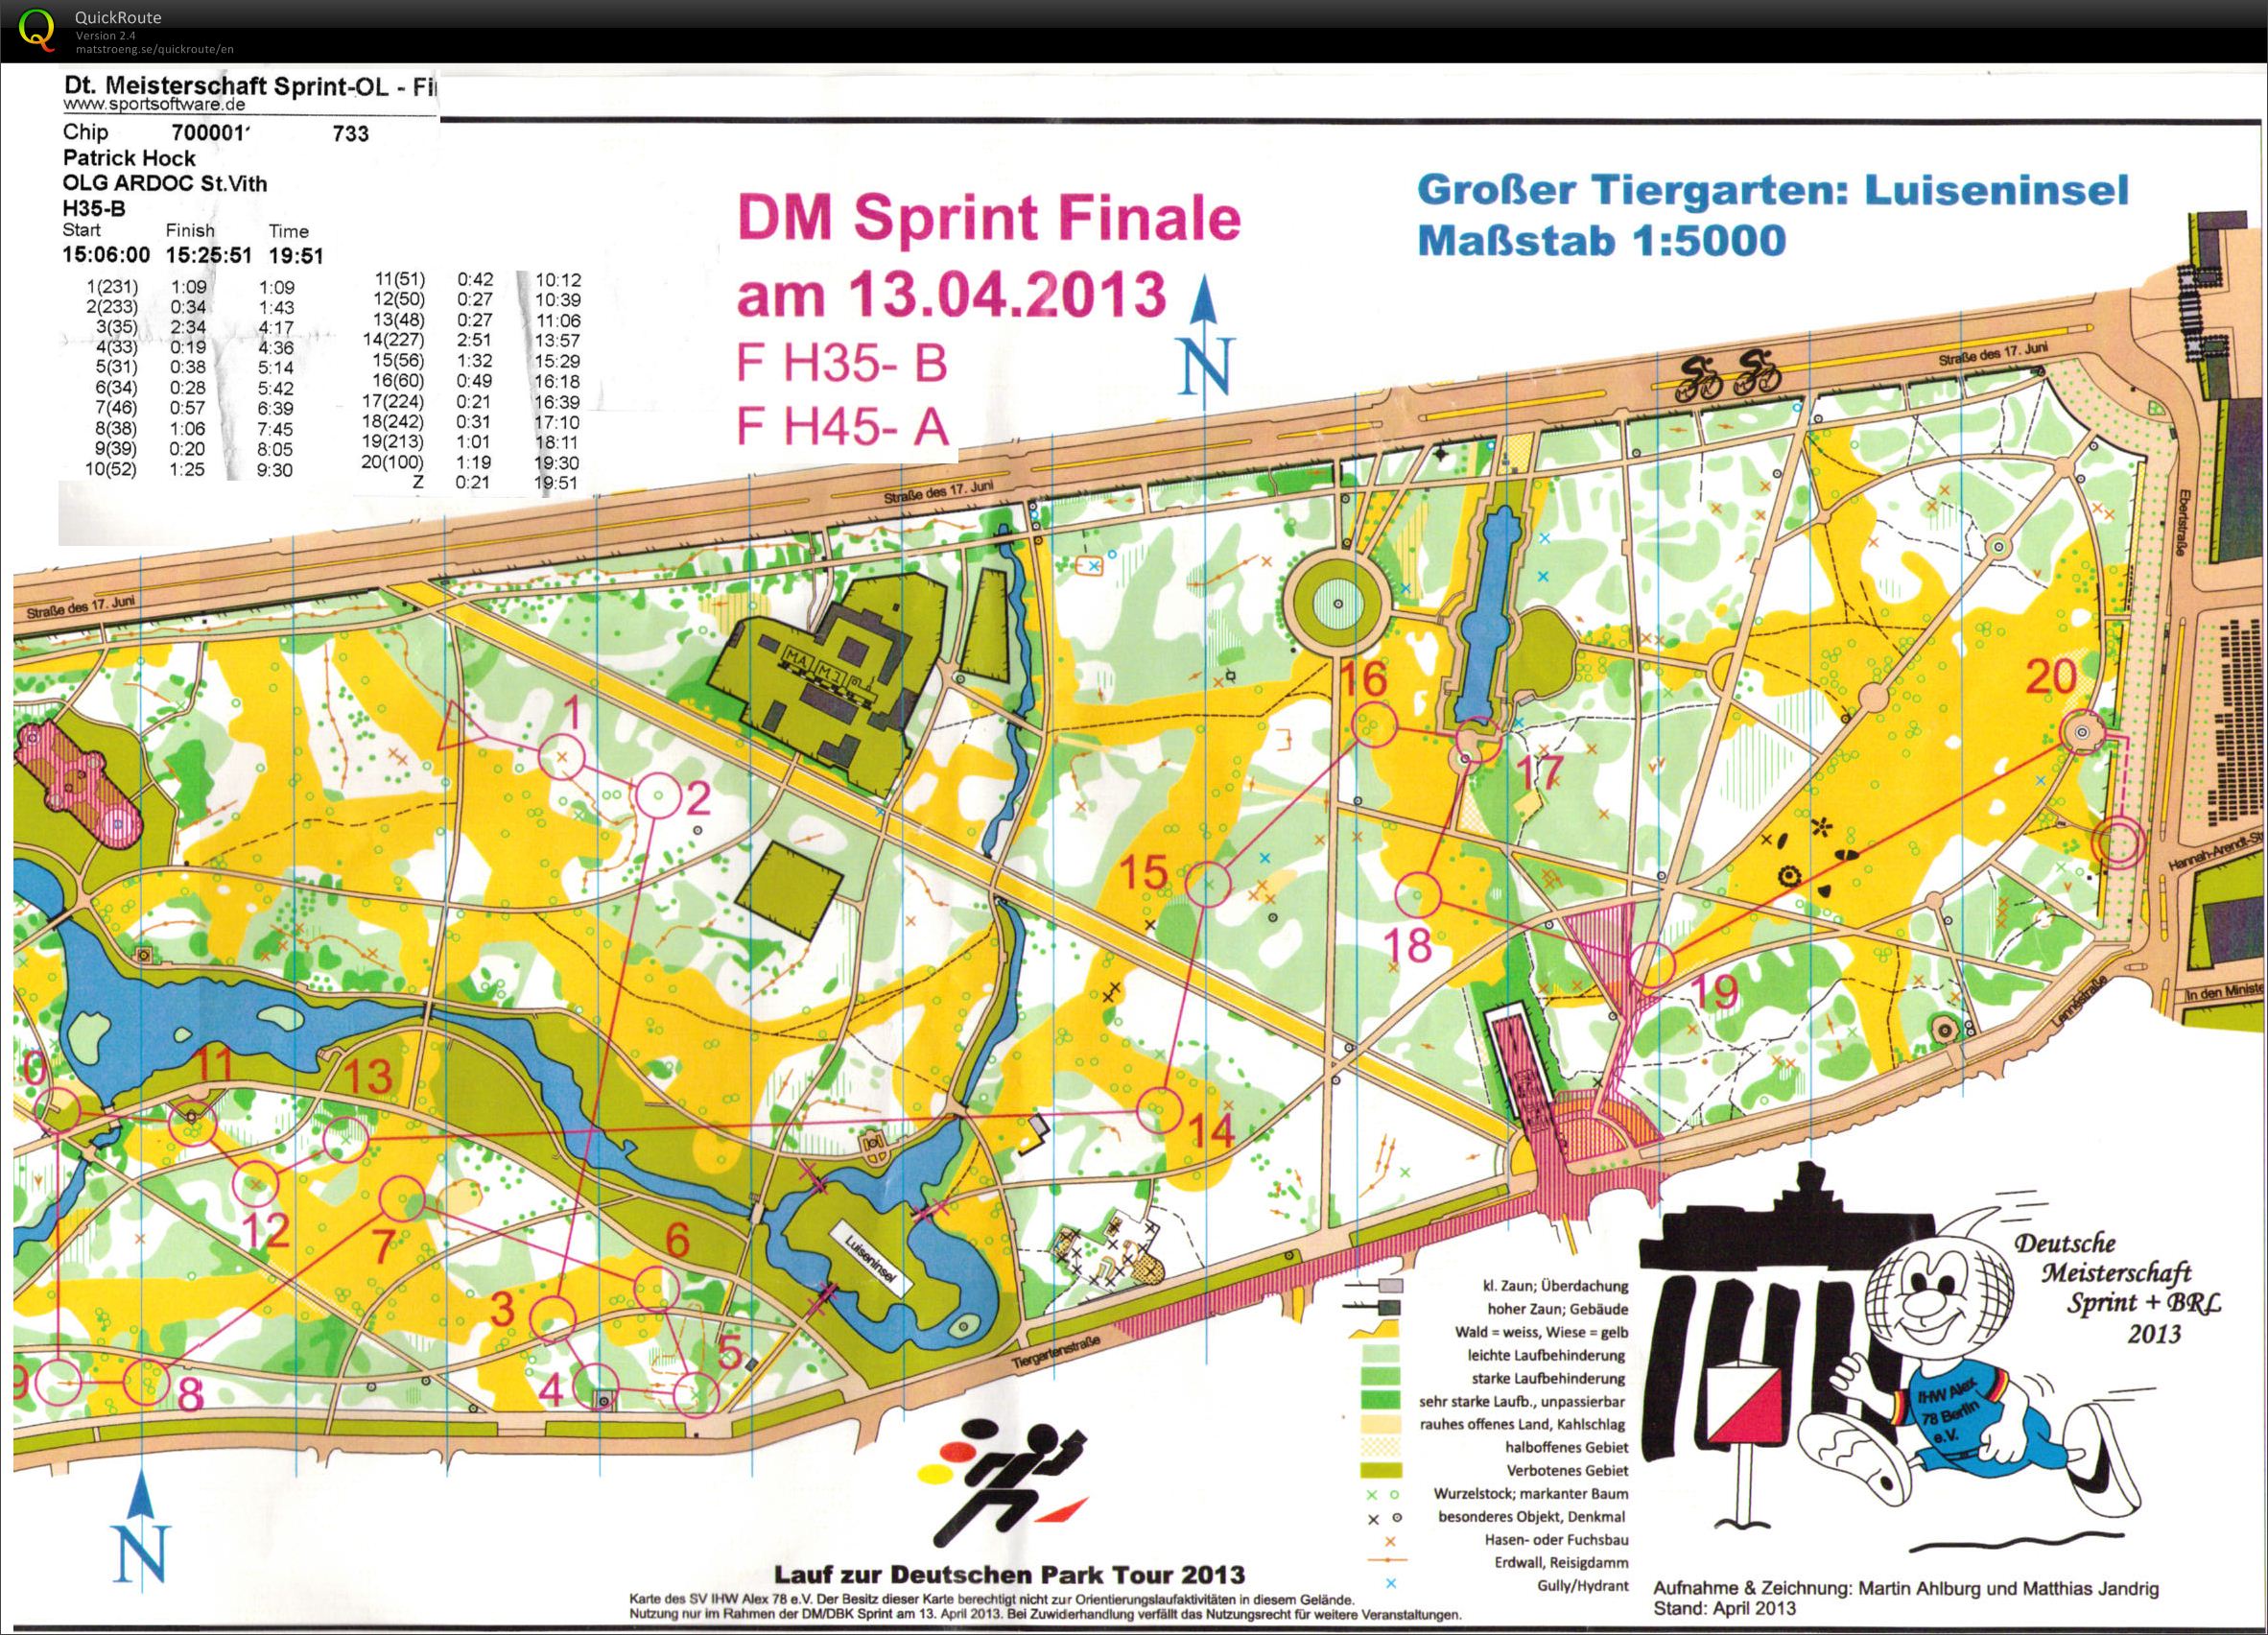 DM Sprint Finale - Berlin (13-04-2013)